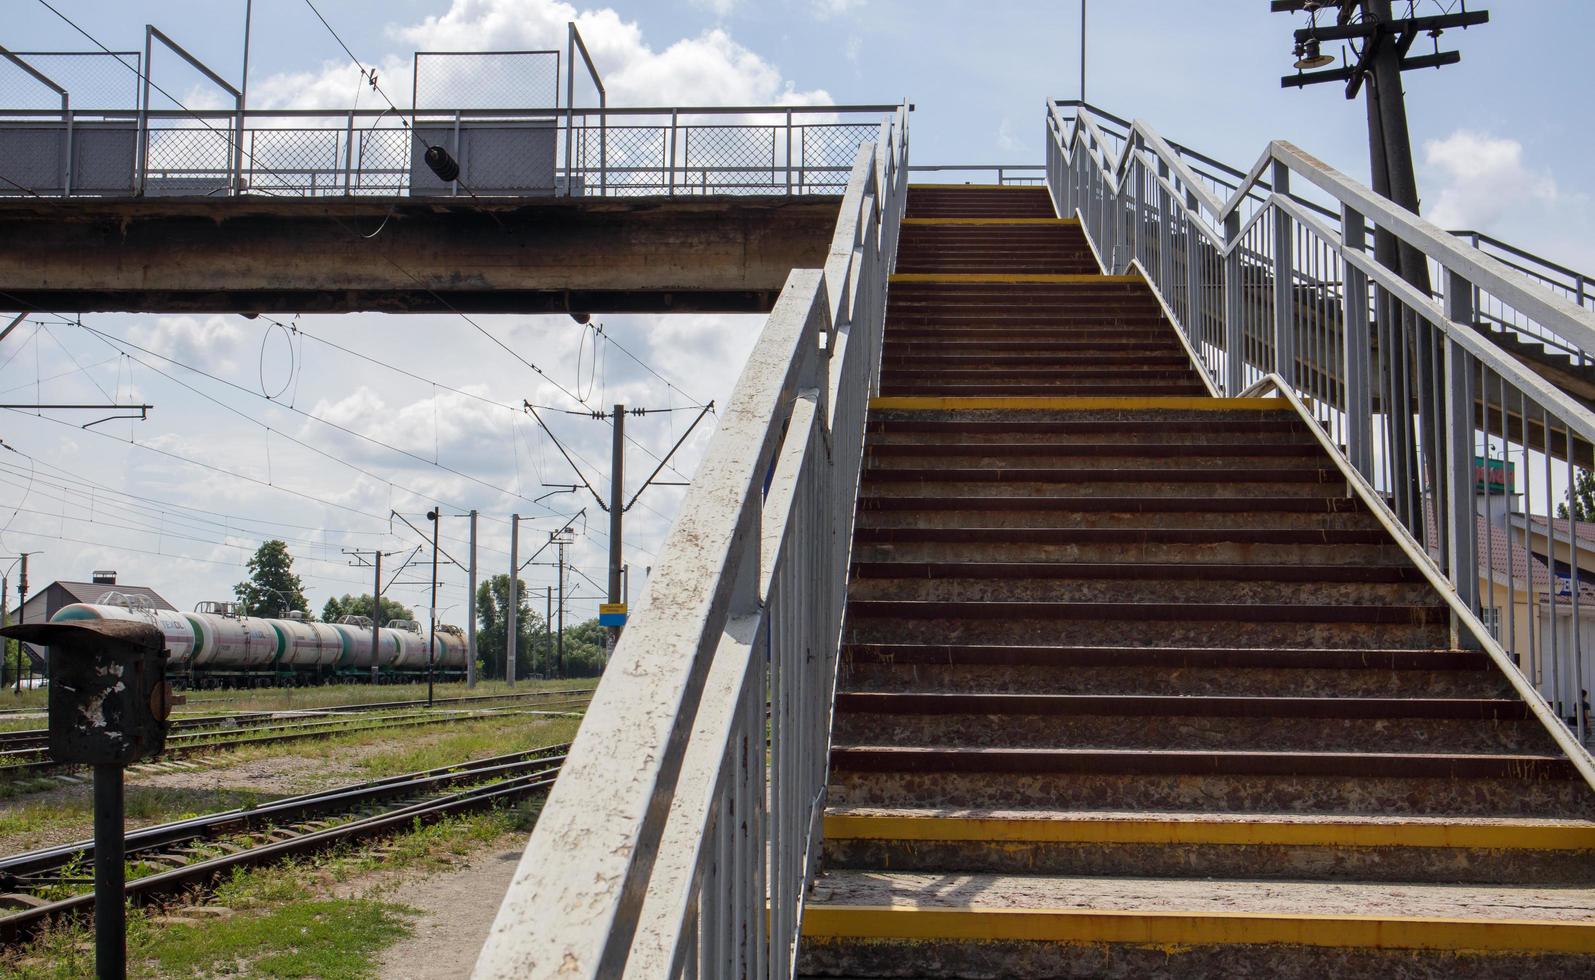 järnvägsbro med trappsteg, med imponerande trappsteg i perspektiv. övergångsställe. brotrappor som förbinder en plattform med en annan vid tågstationen. Ukraina, Kiev - 19 augusti 2021. foto